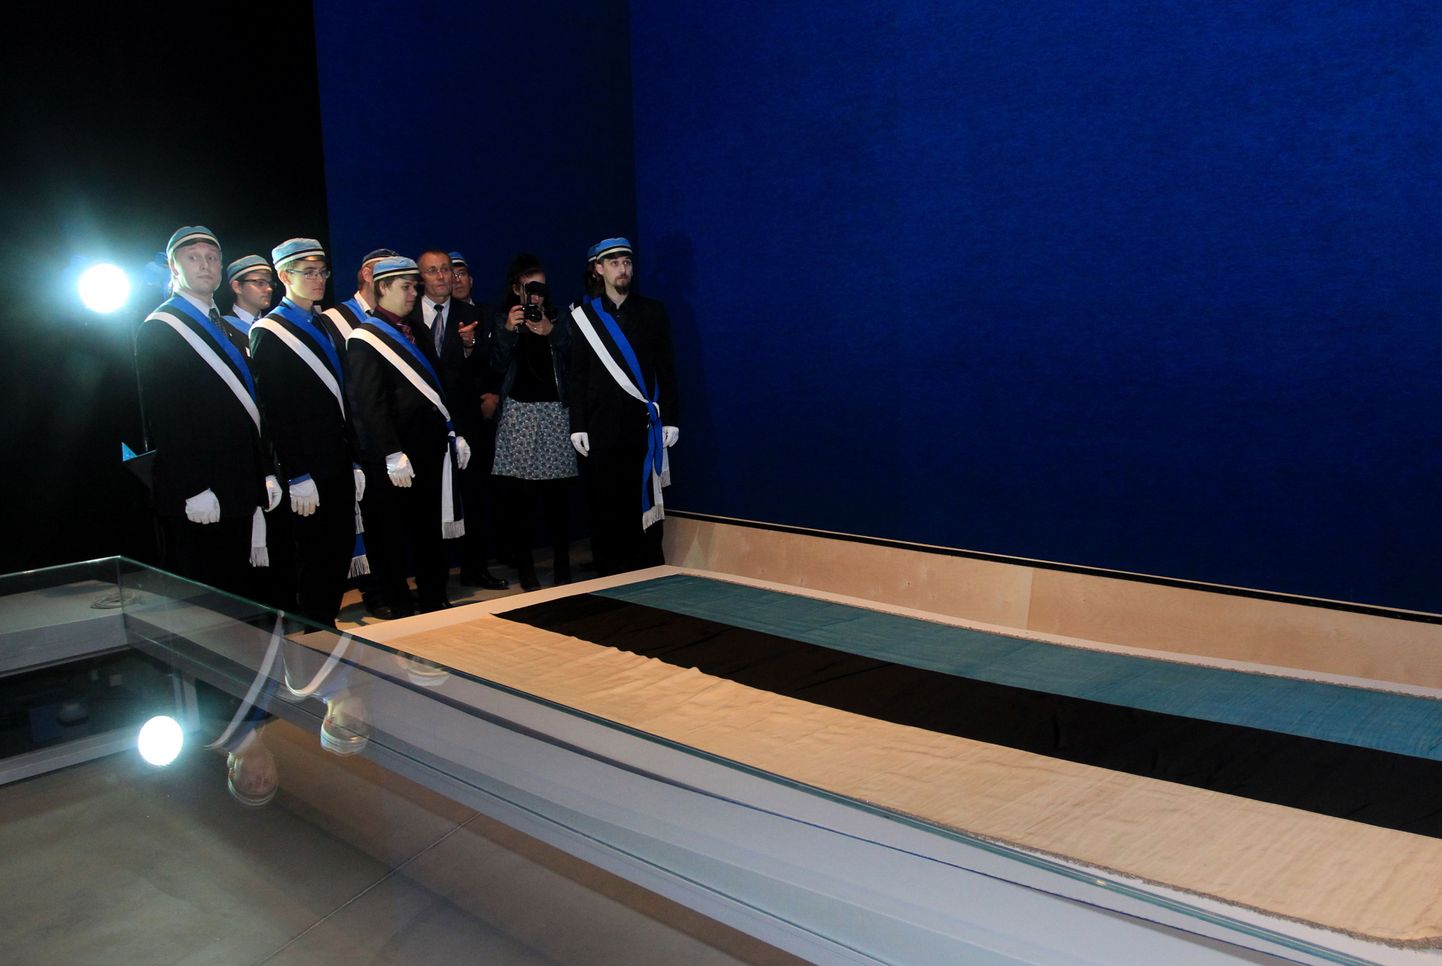 Esimene sini-must-valge trikoloor on hoiul Eesti Rahva Muuseumis.